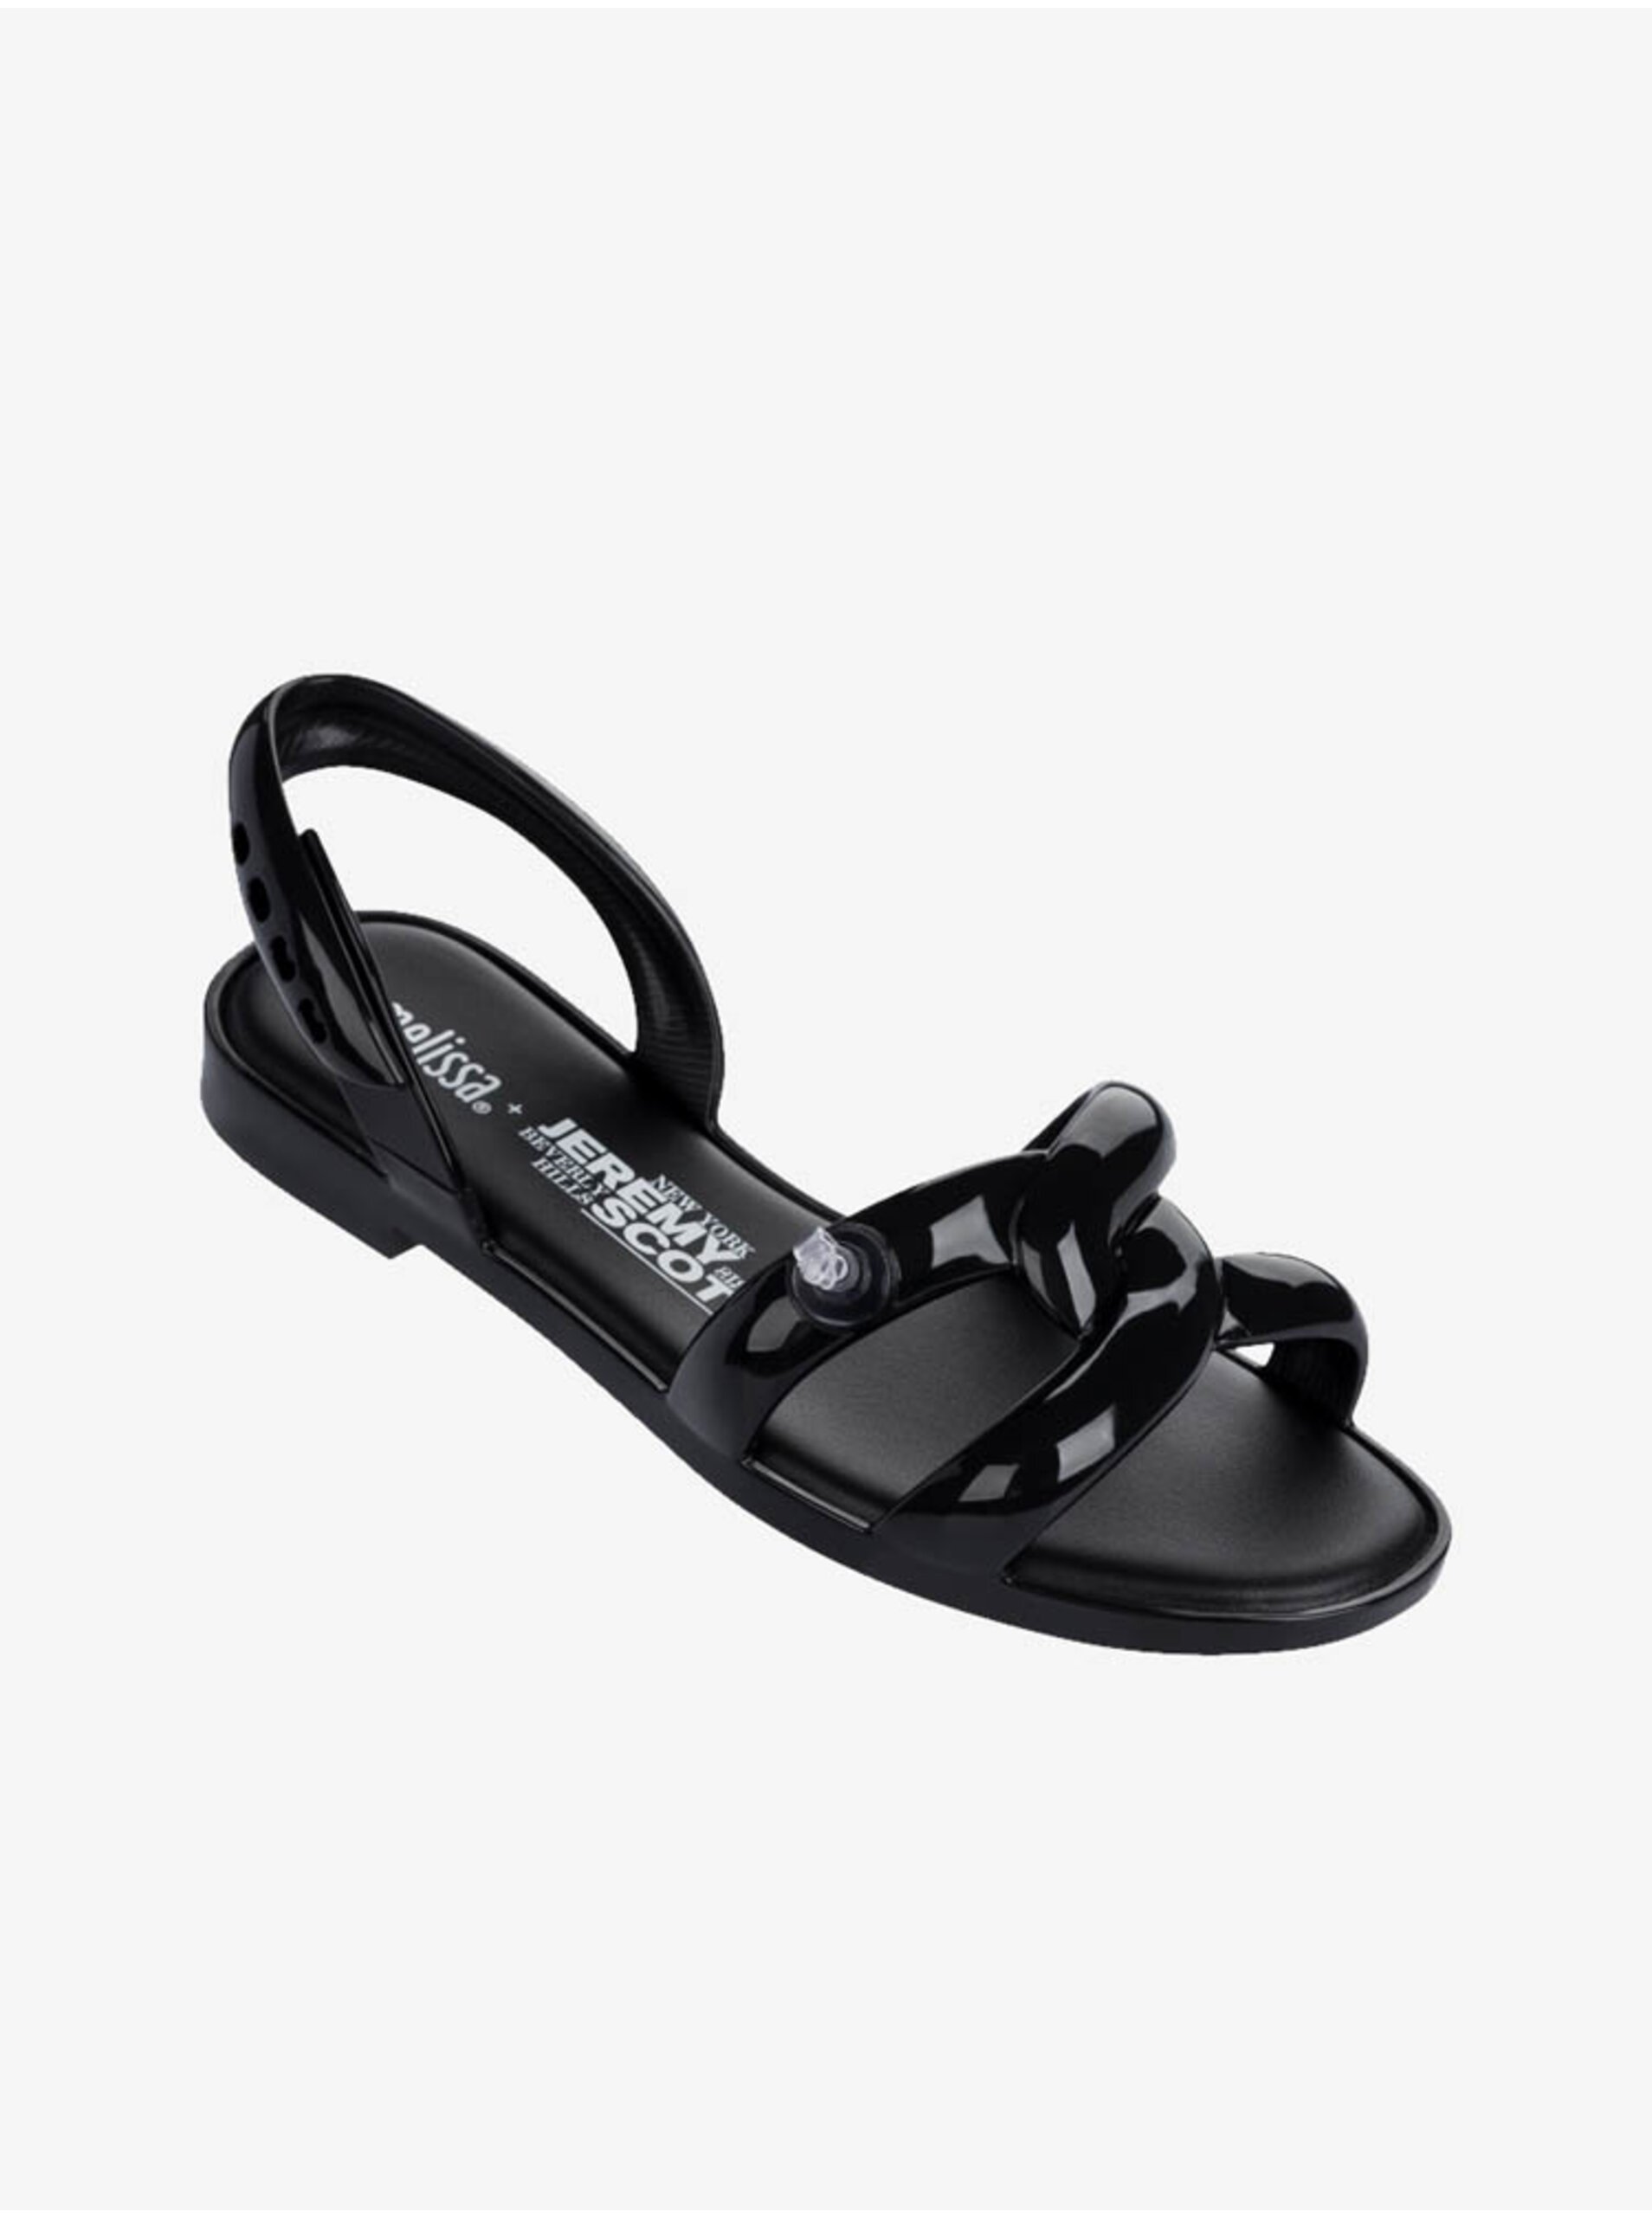 E-shop Čierne dámske sandálky Melissa Tube Sandal + Jeremy Scott